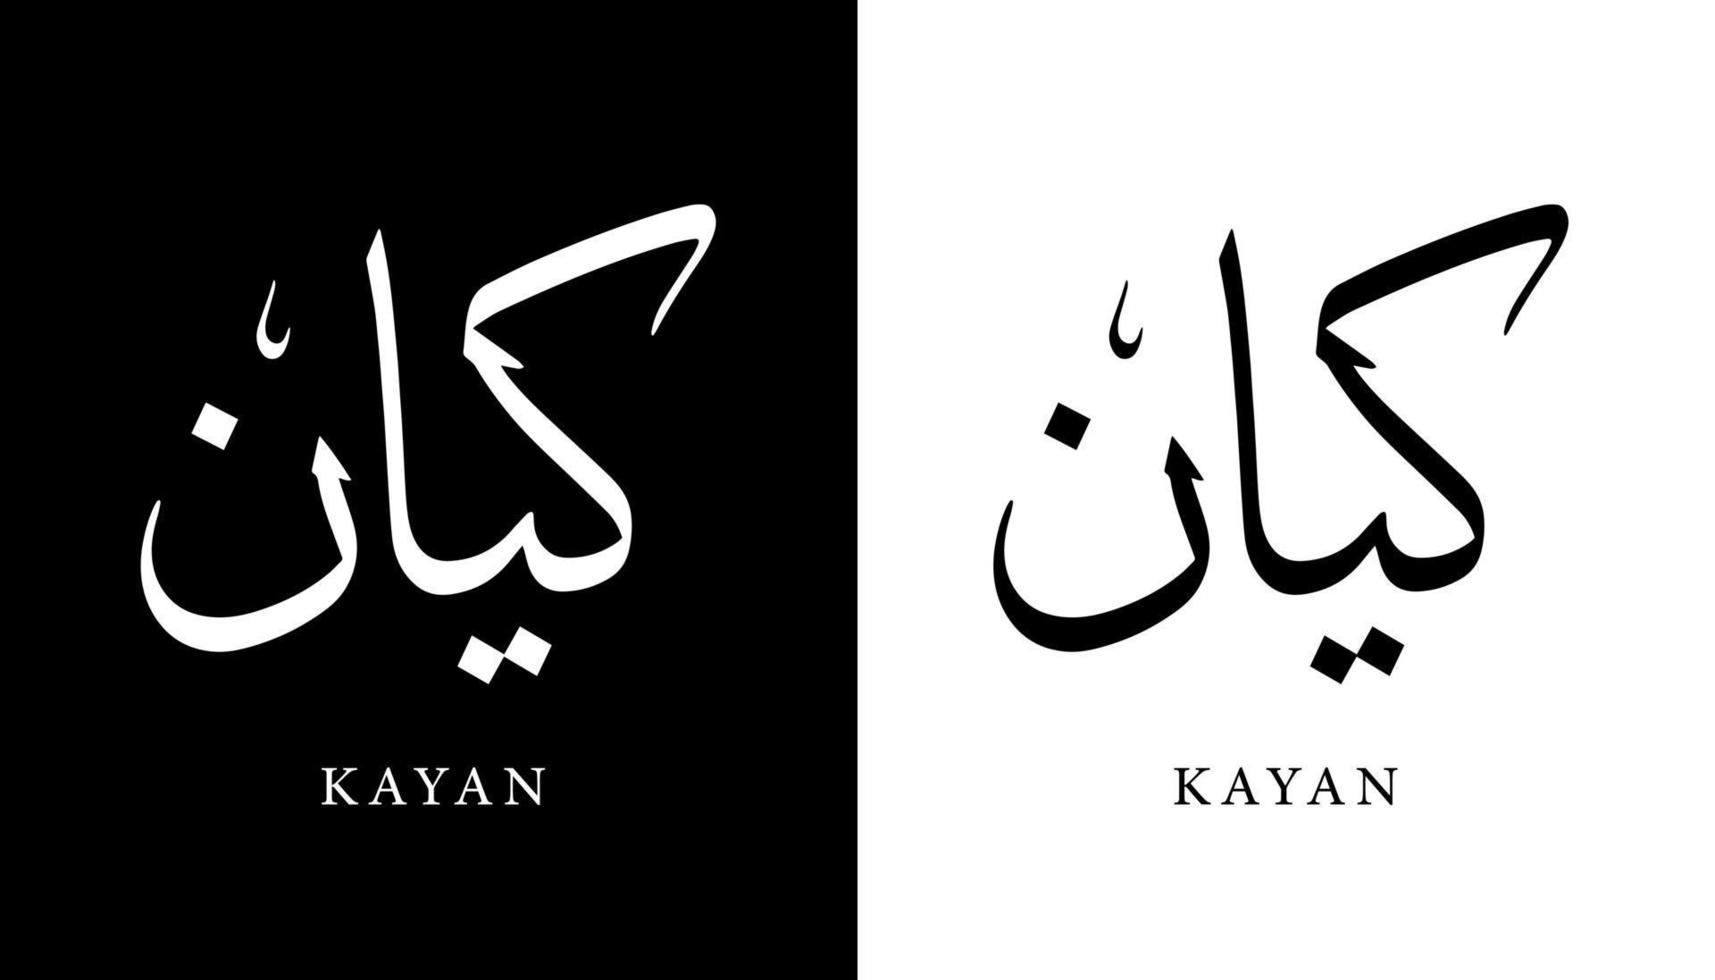 nome de caligrafia árabe traduzido 'kayan' letras árabes alfabeto fonte letras ilustração em vetor logotipo islâmico